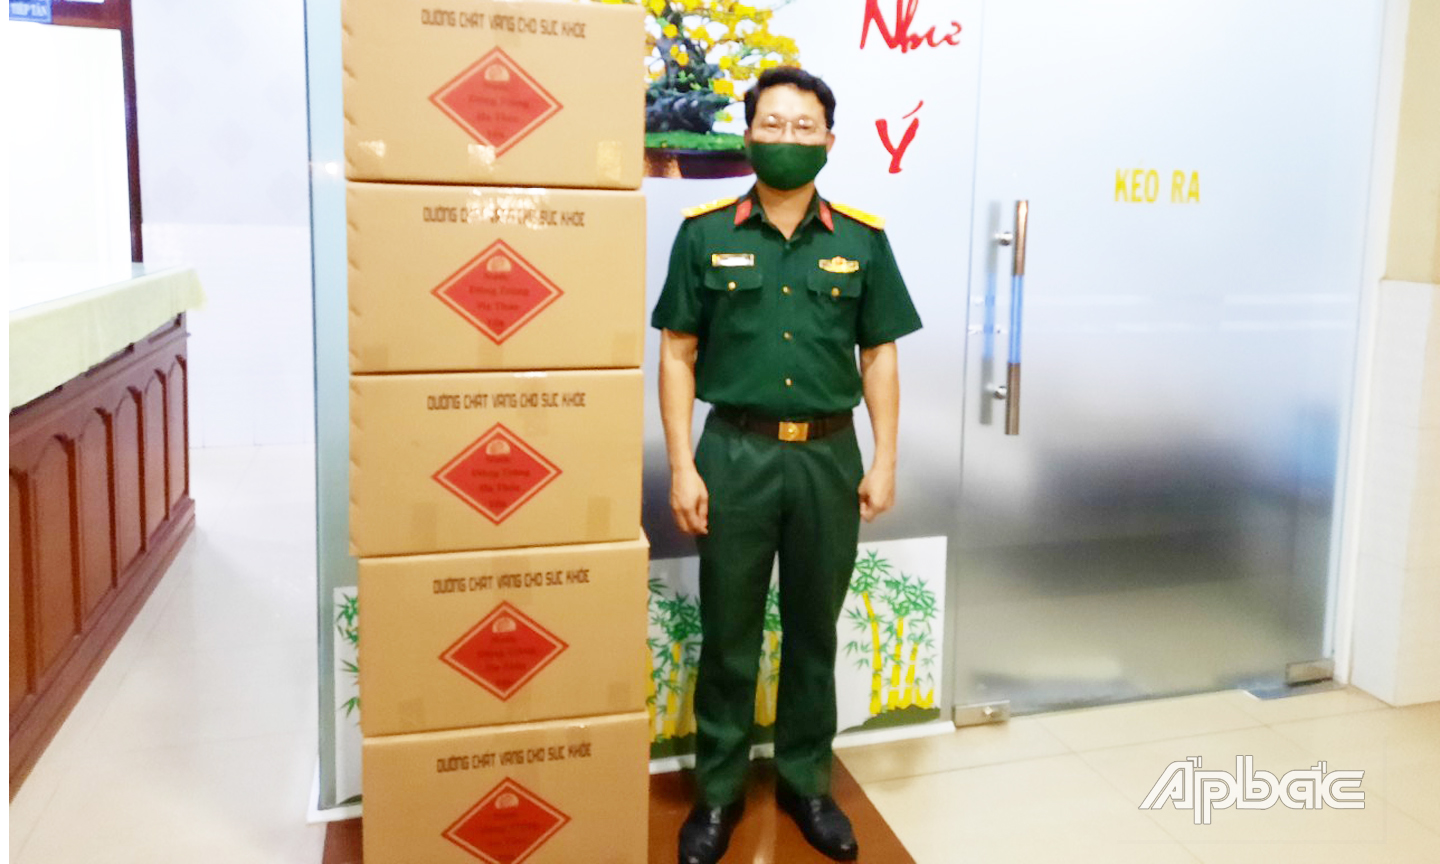 Đồng chí Chánh văn phòng Bộ Chỉ huy quân sự tỉnh tiếp nhận 5 thùng Đông trùng hạ thảo sấy khô của Công ty Thiên Ân do từ Báo Ấp Bắc chuyển đến